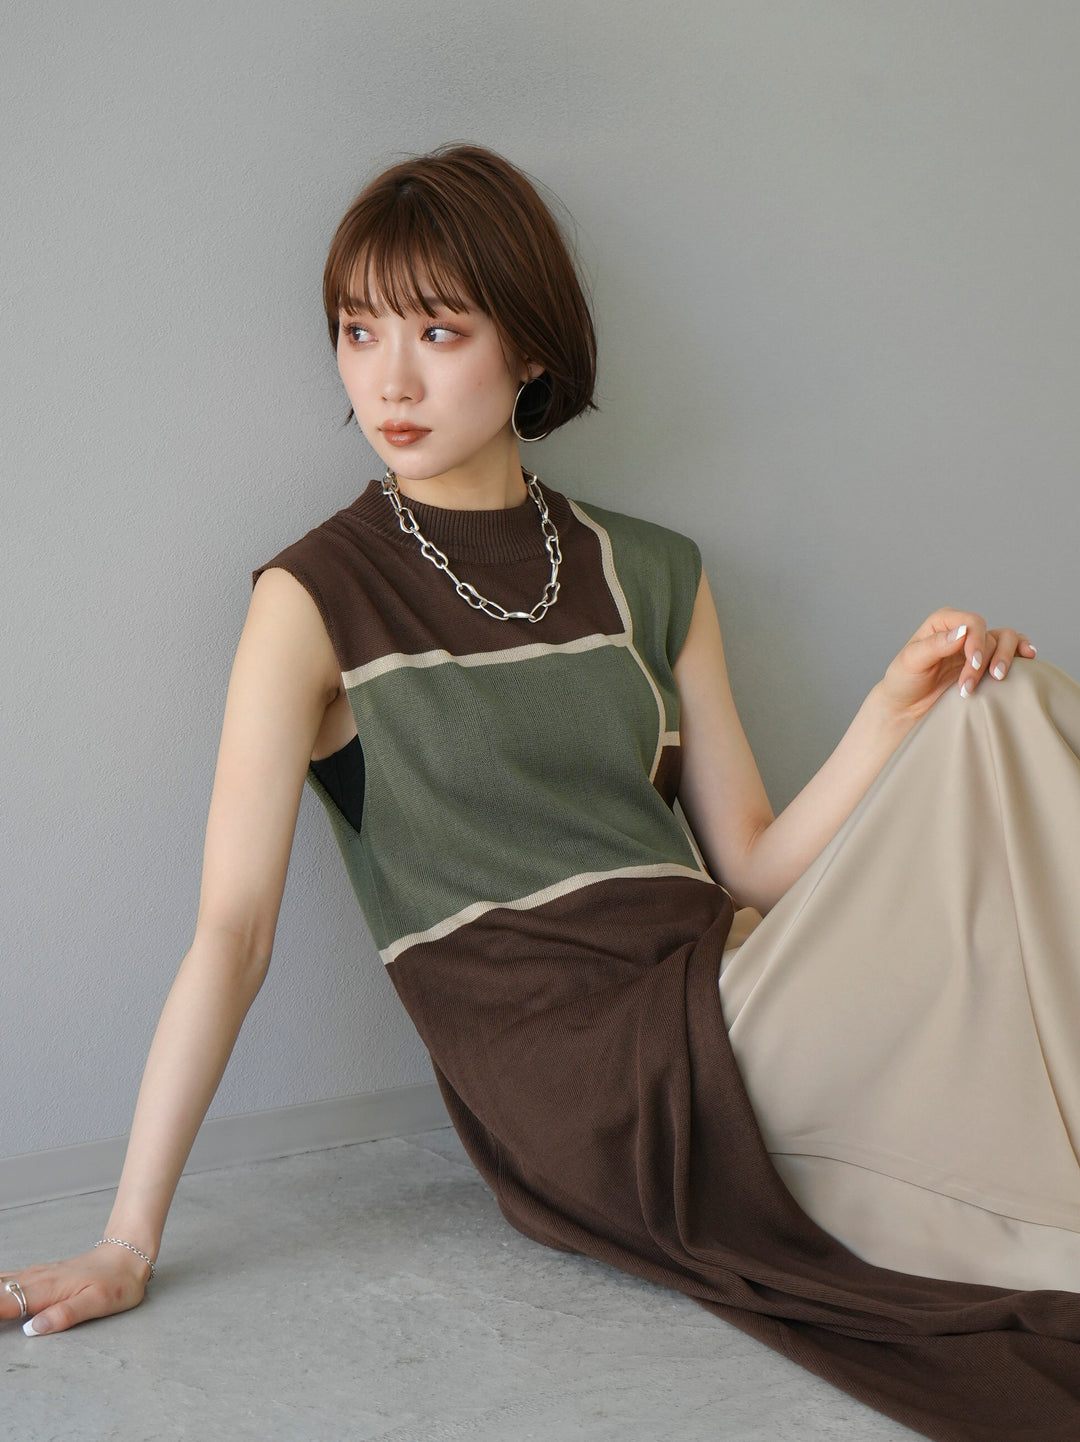 [SET] Bicolor slit summer knit dress + selectable necklace set (2 sets)